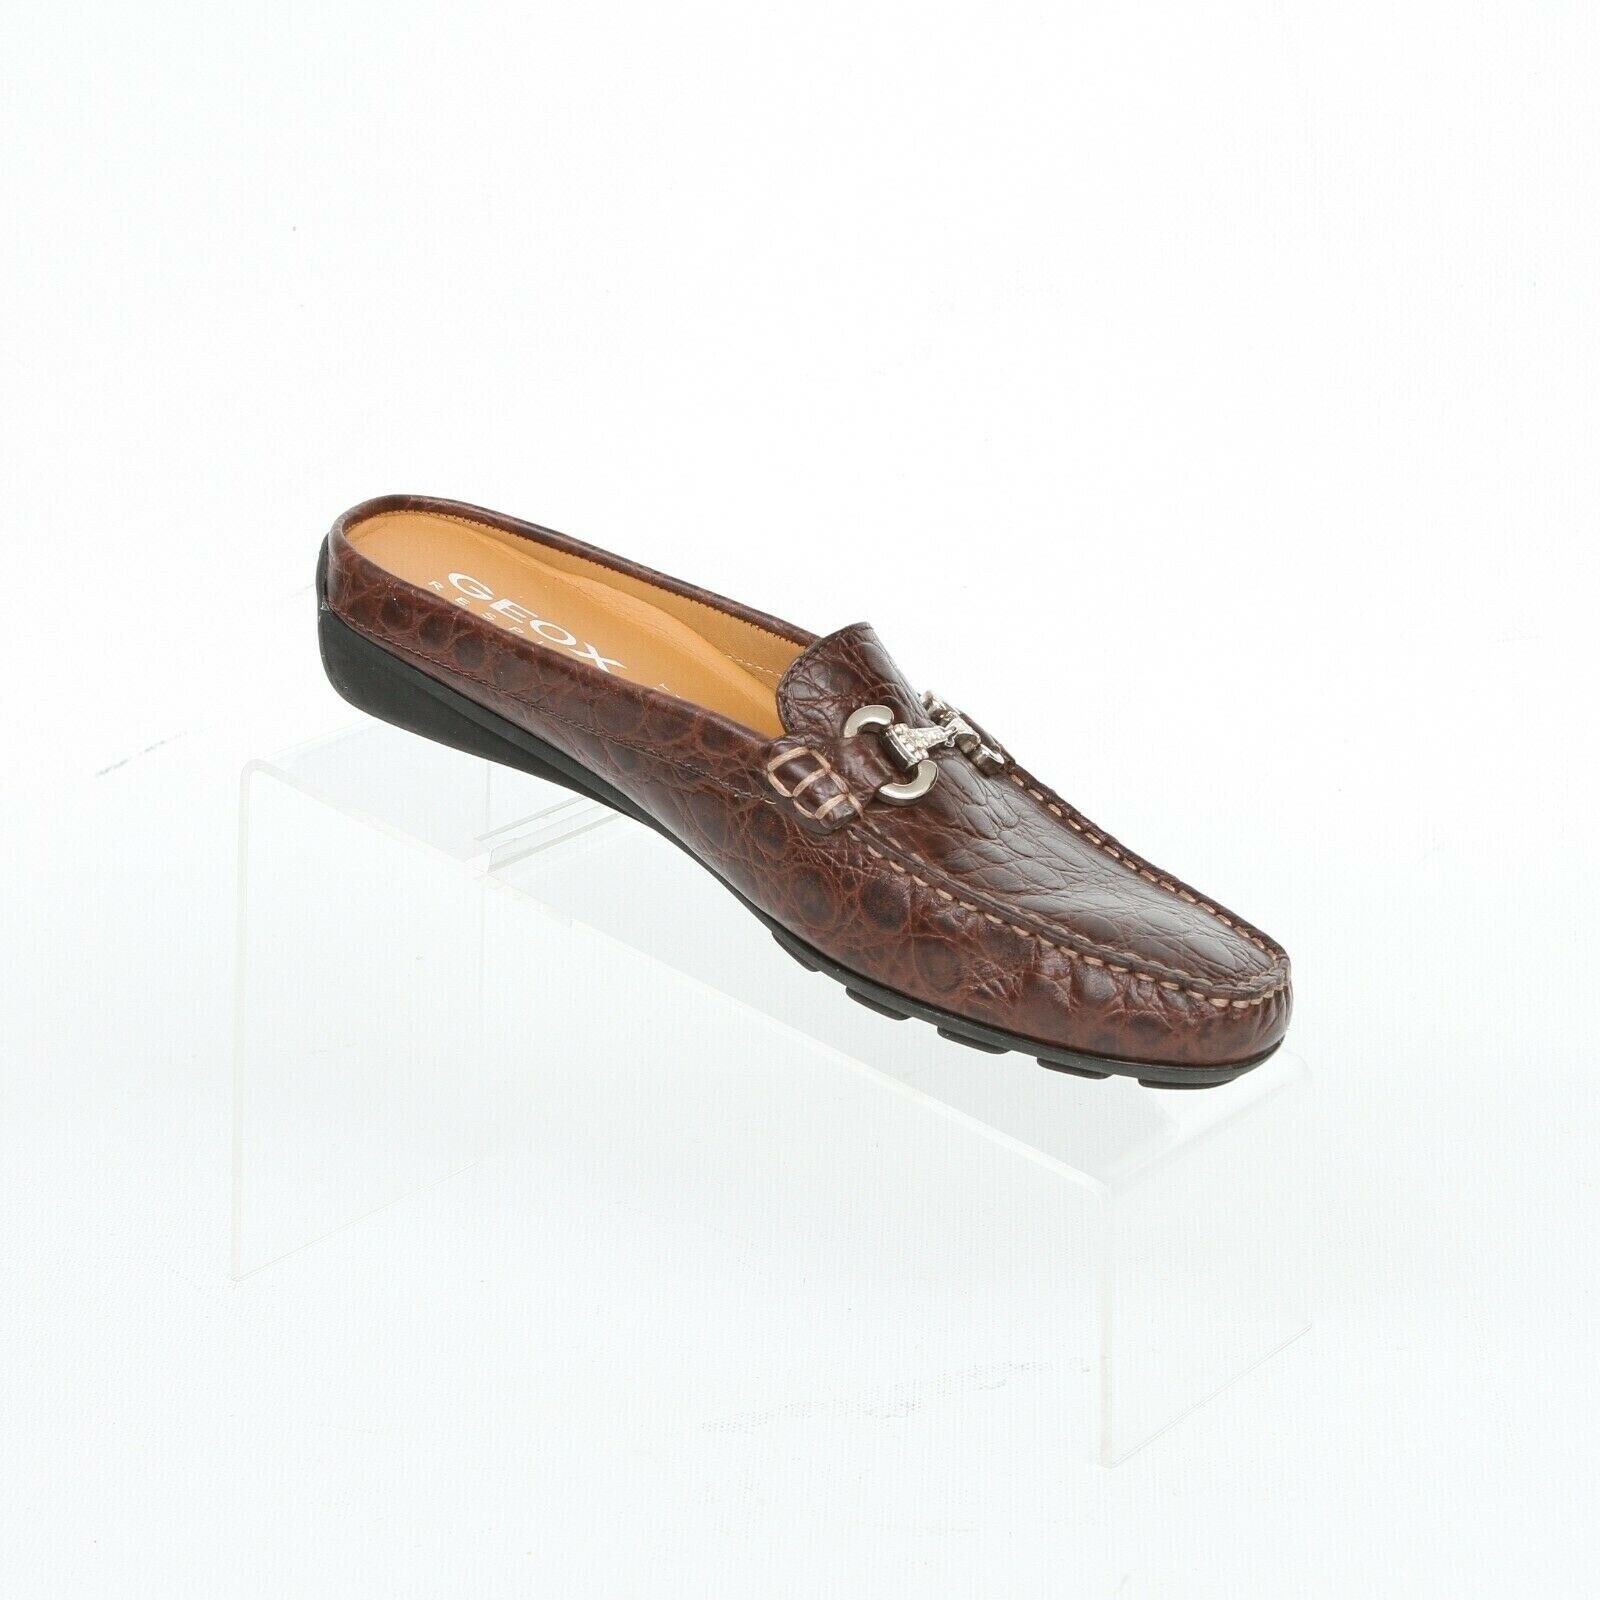 cerrar crédito Lo encontré Geox Respira Brown Croc Print Leather Horsebit Mule Slides Womens 38 US 8  Casual | eBay